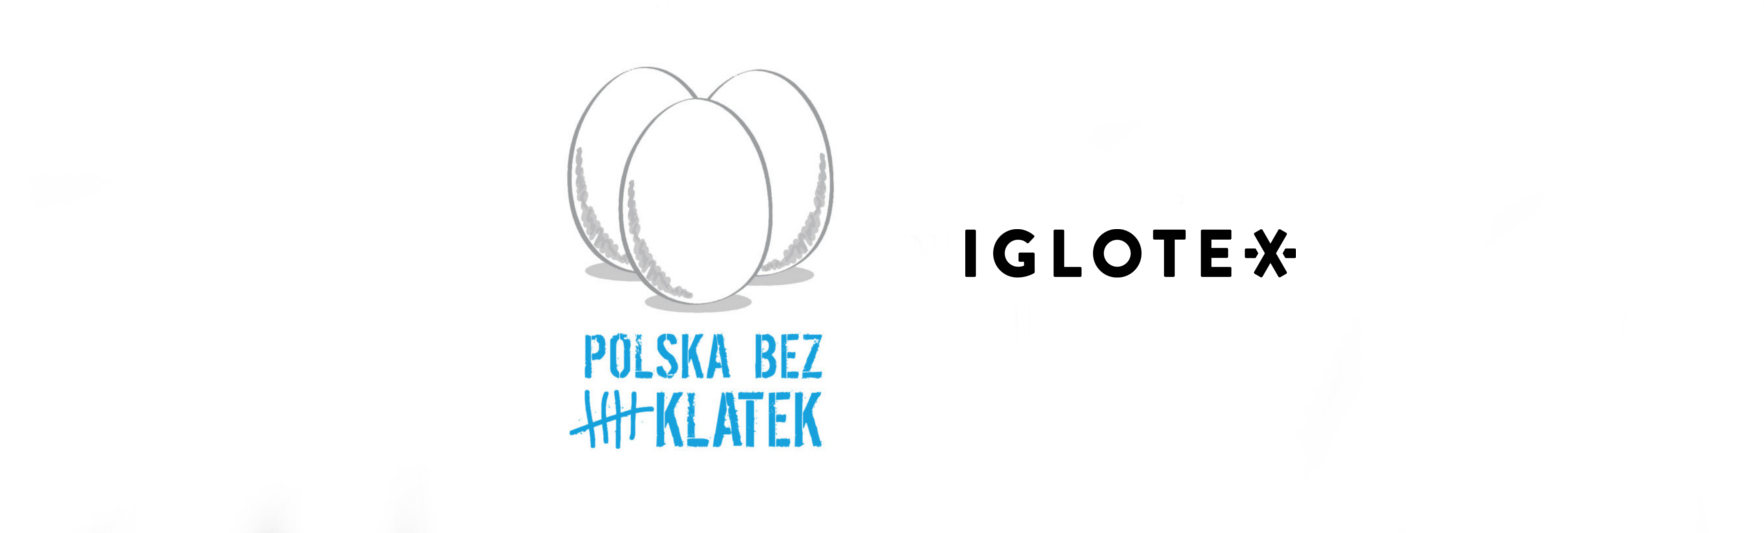 Firma Iglotex dołączyła do inicjatywy 